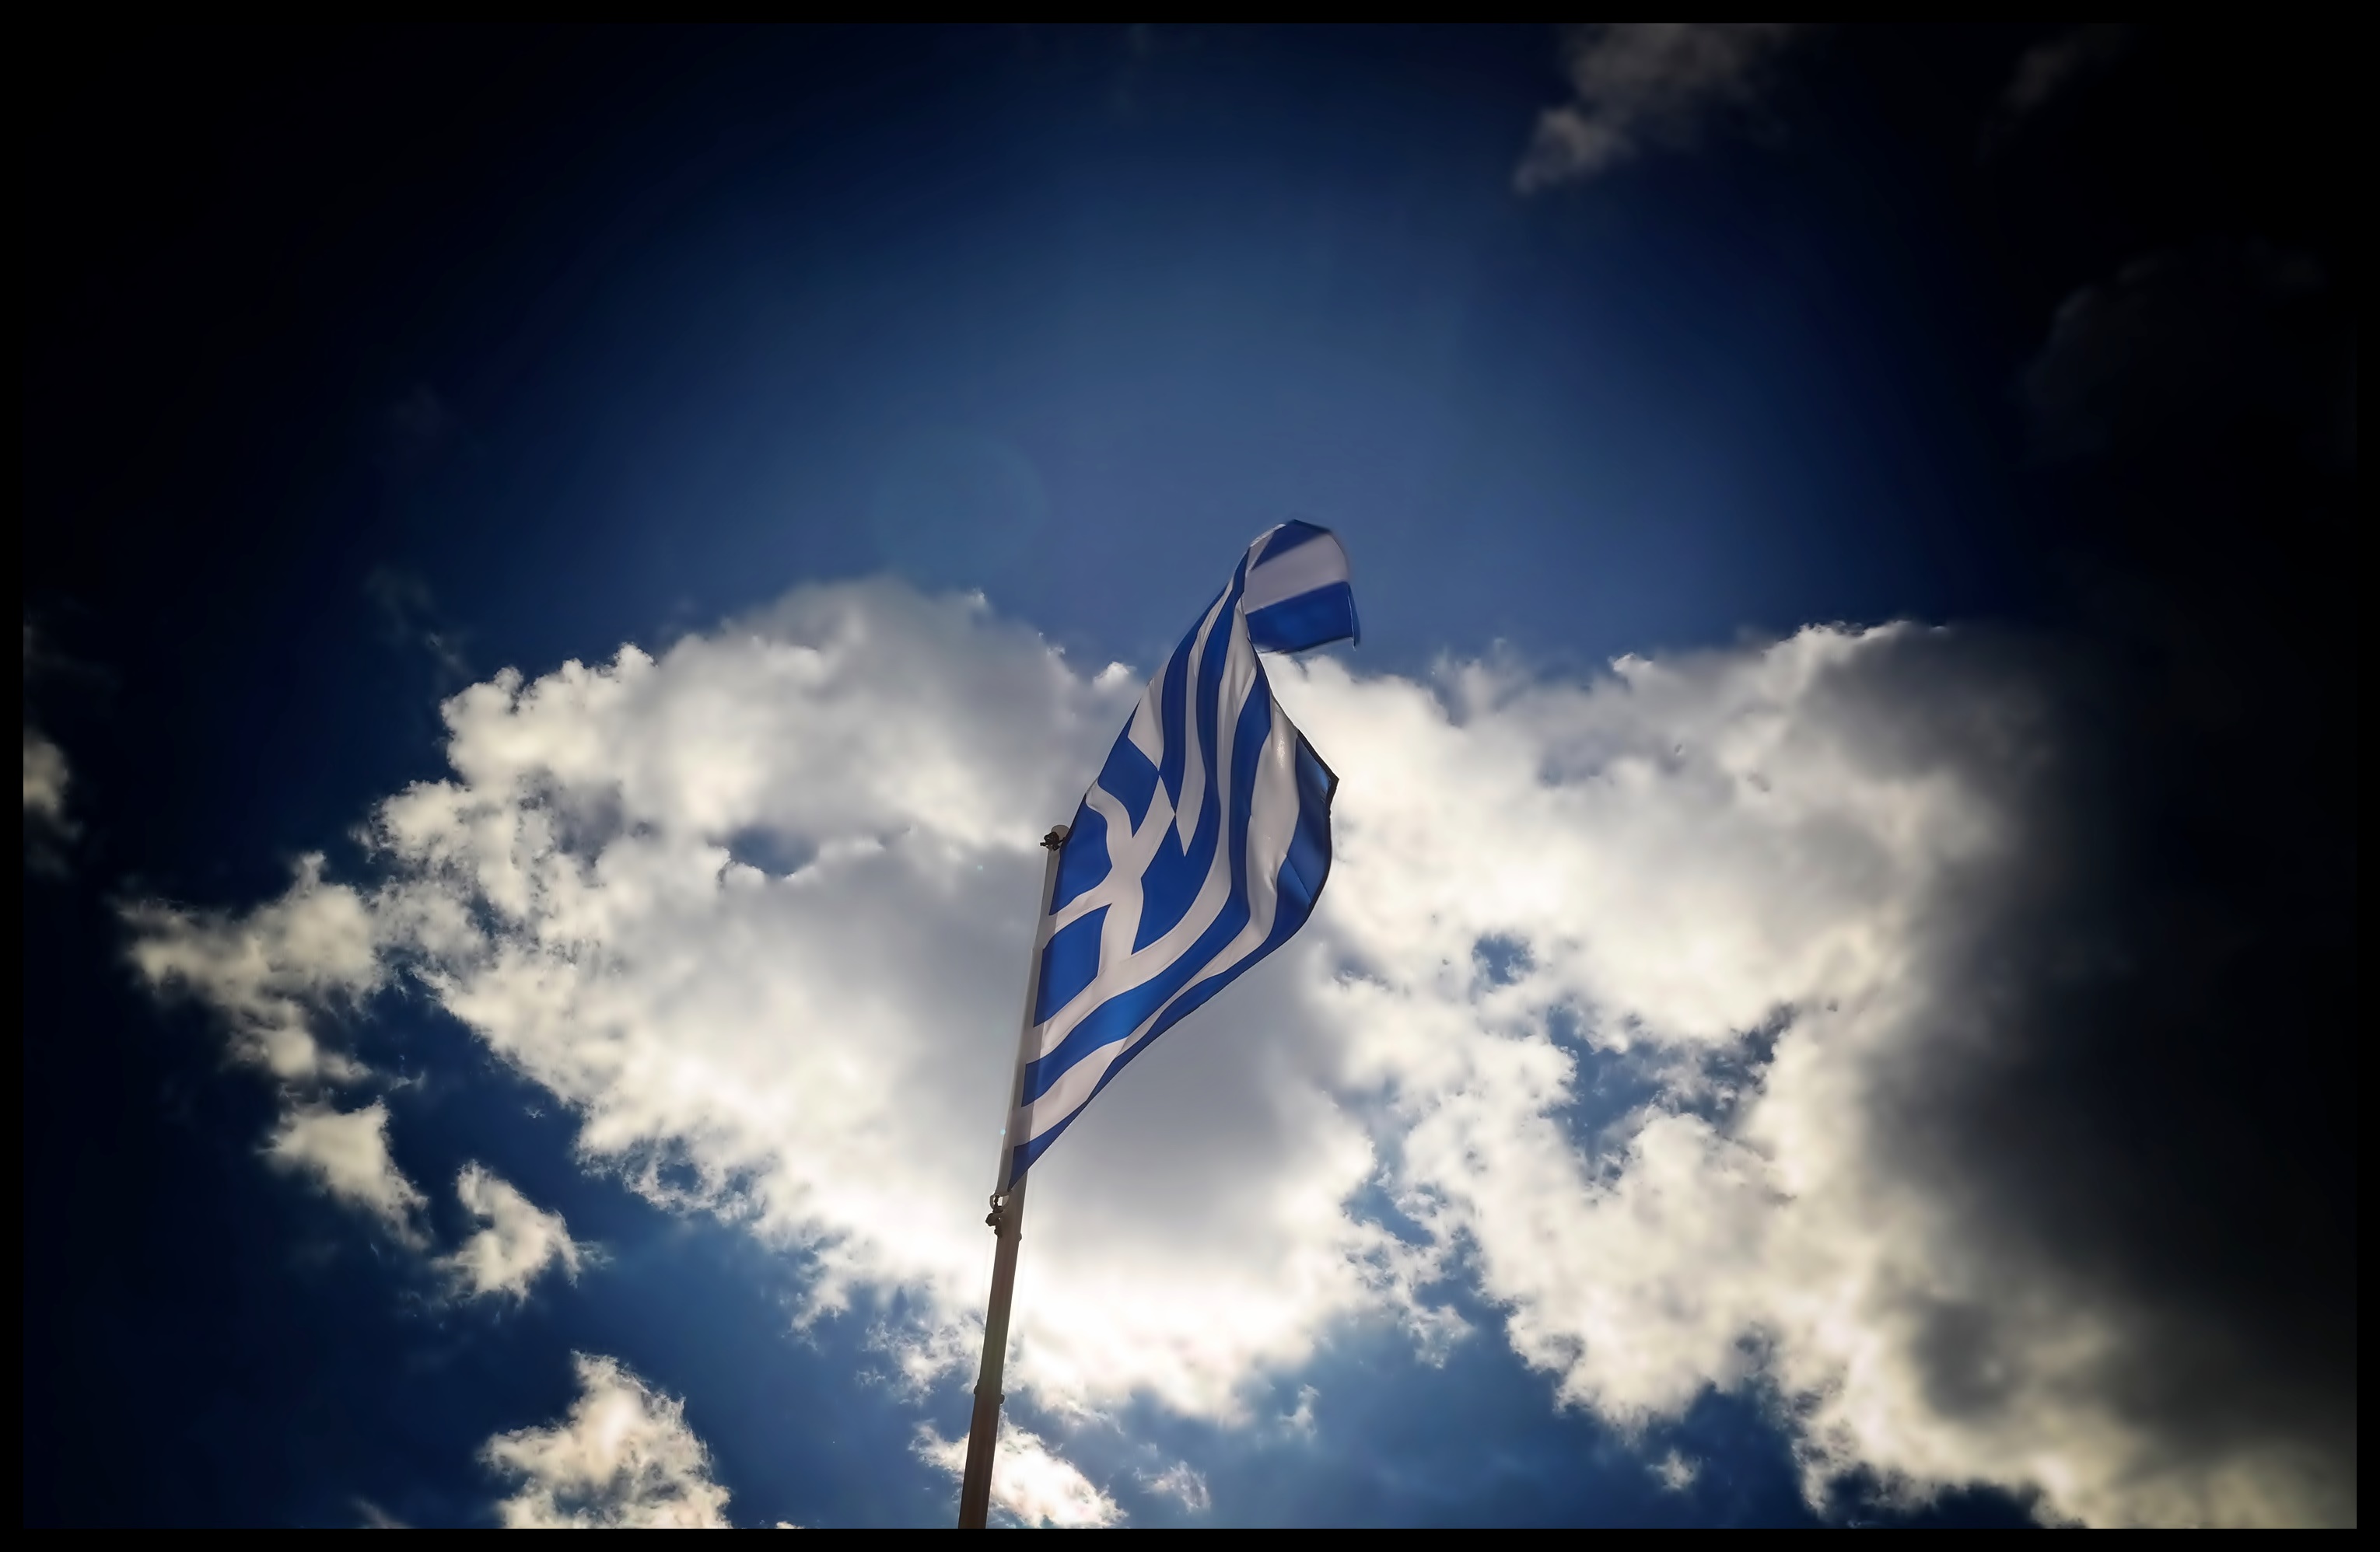 Κρήτη σημαία: Γερμανοί αξιωματικοί κατέβασαν την ελληνική σημαία και ύψωσαν τη γερμανική